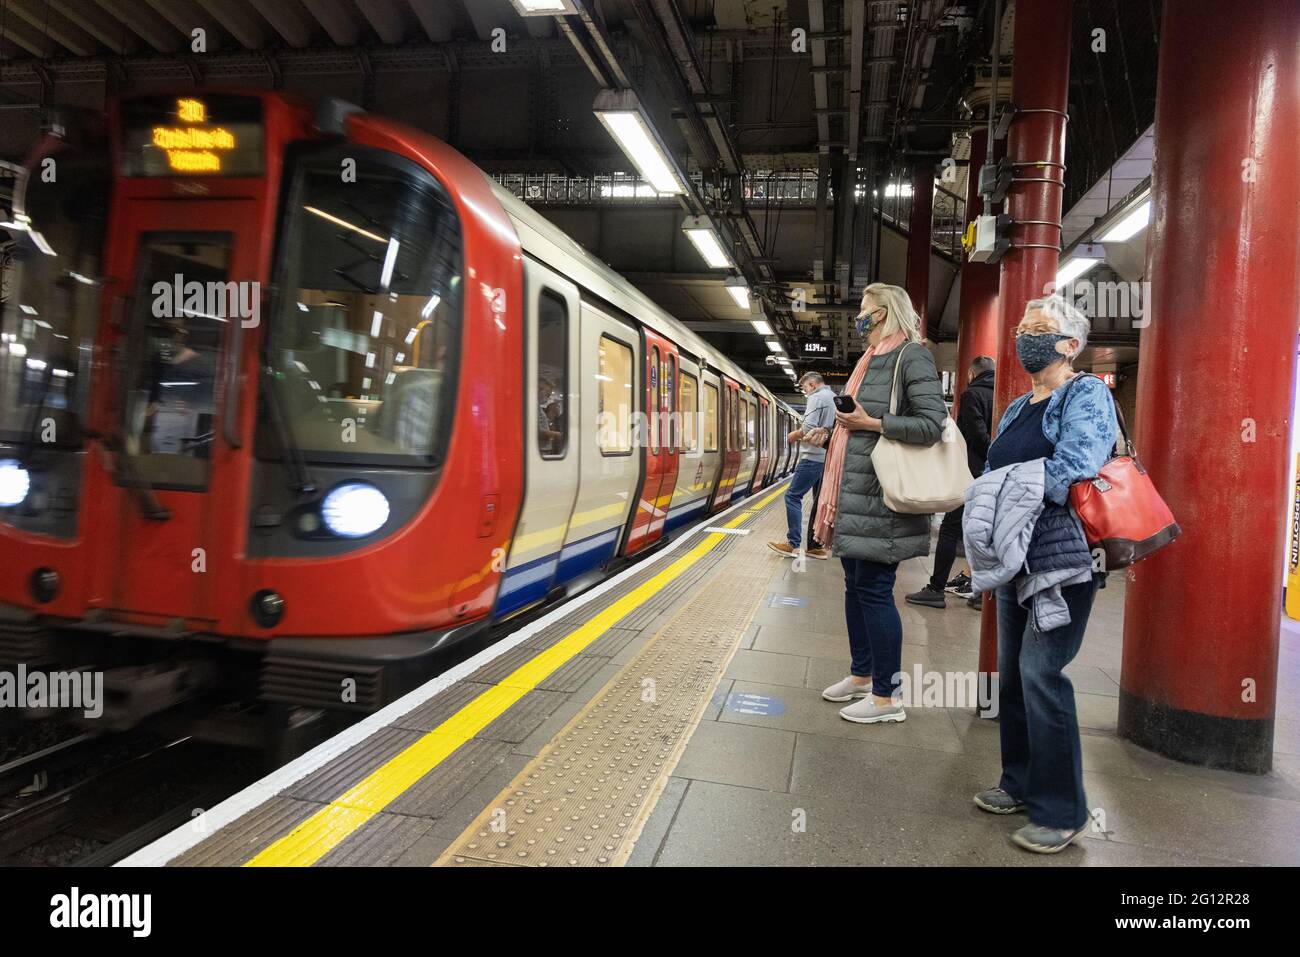 Des personnes portant des masques et prenant des distances sociales sur la plate-forme lors de l'arrivée d'un train de métro, lors de la pandémie COVID 19, London Underground, Londres UK 2021 Banque D'Images